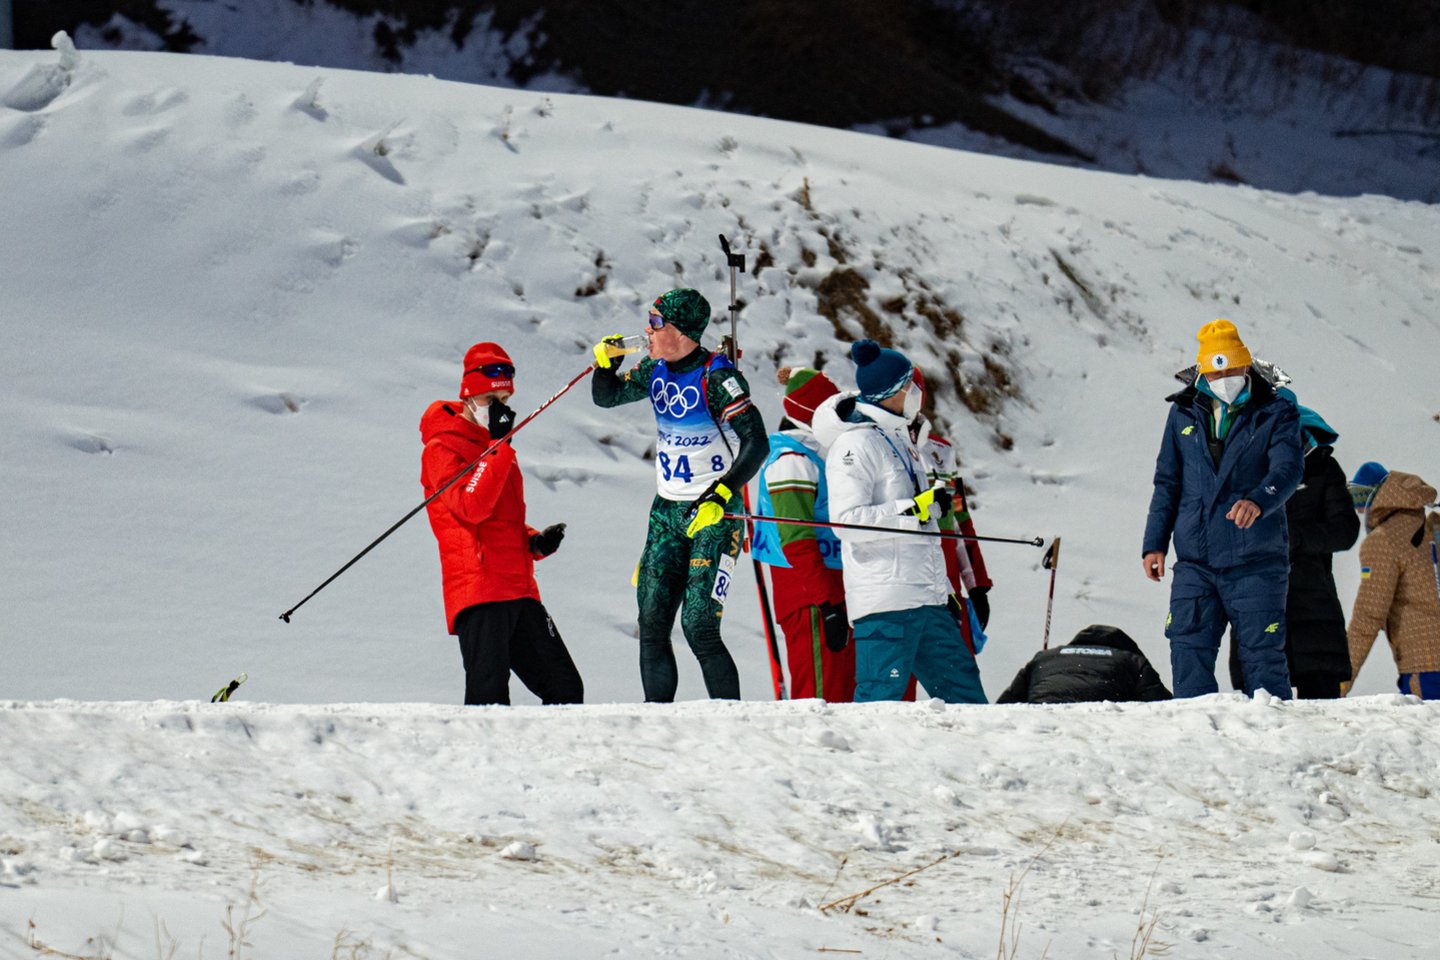  Lietuvos biatlonininkai dalyvavo 20 km asmeninėse lenktynėse.<br> V.Dranginio nuotr.